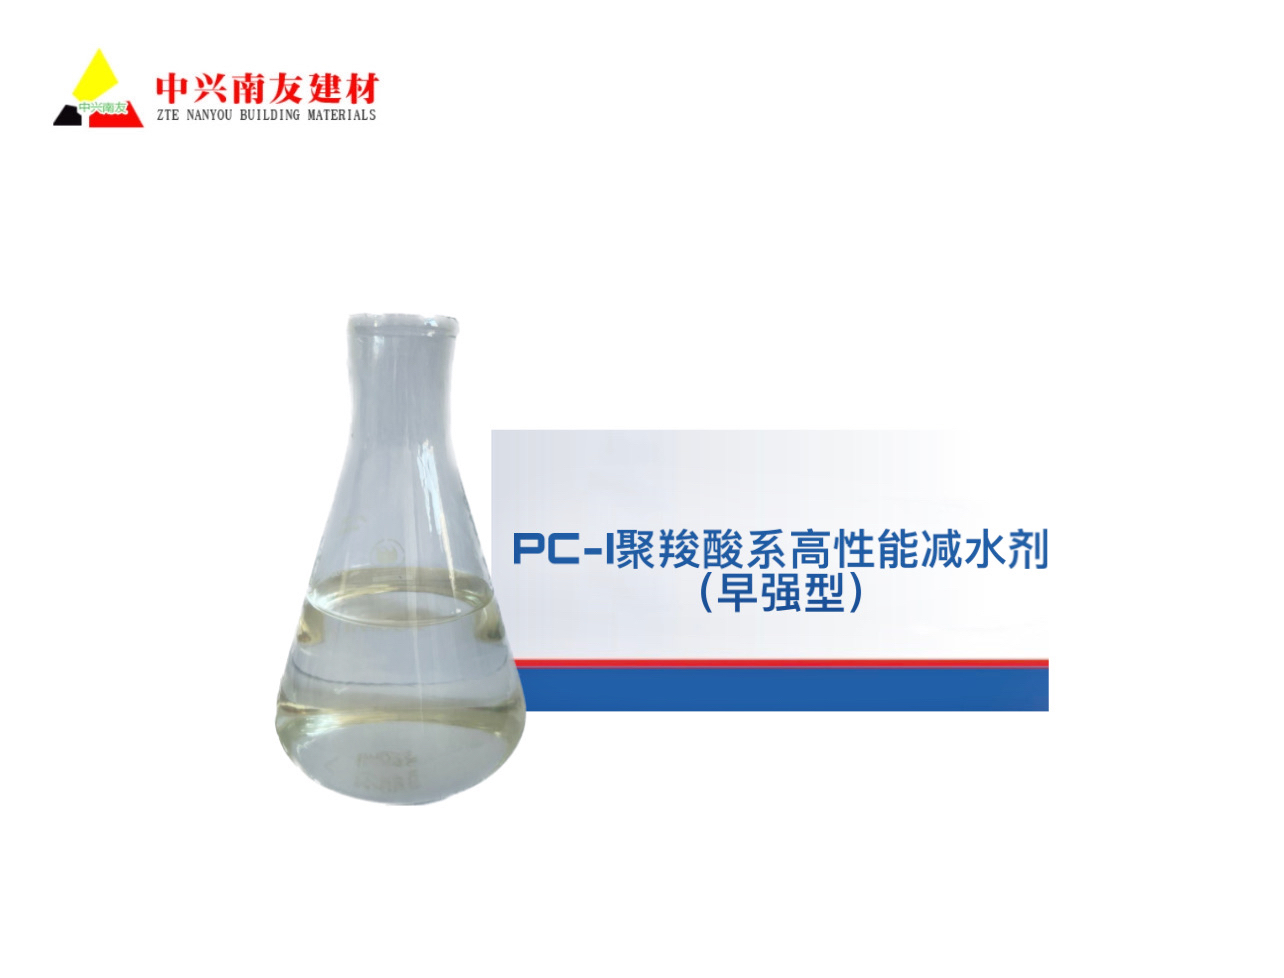 贵州 PC-I聚羧酸系高性能减水剂（早强型）